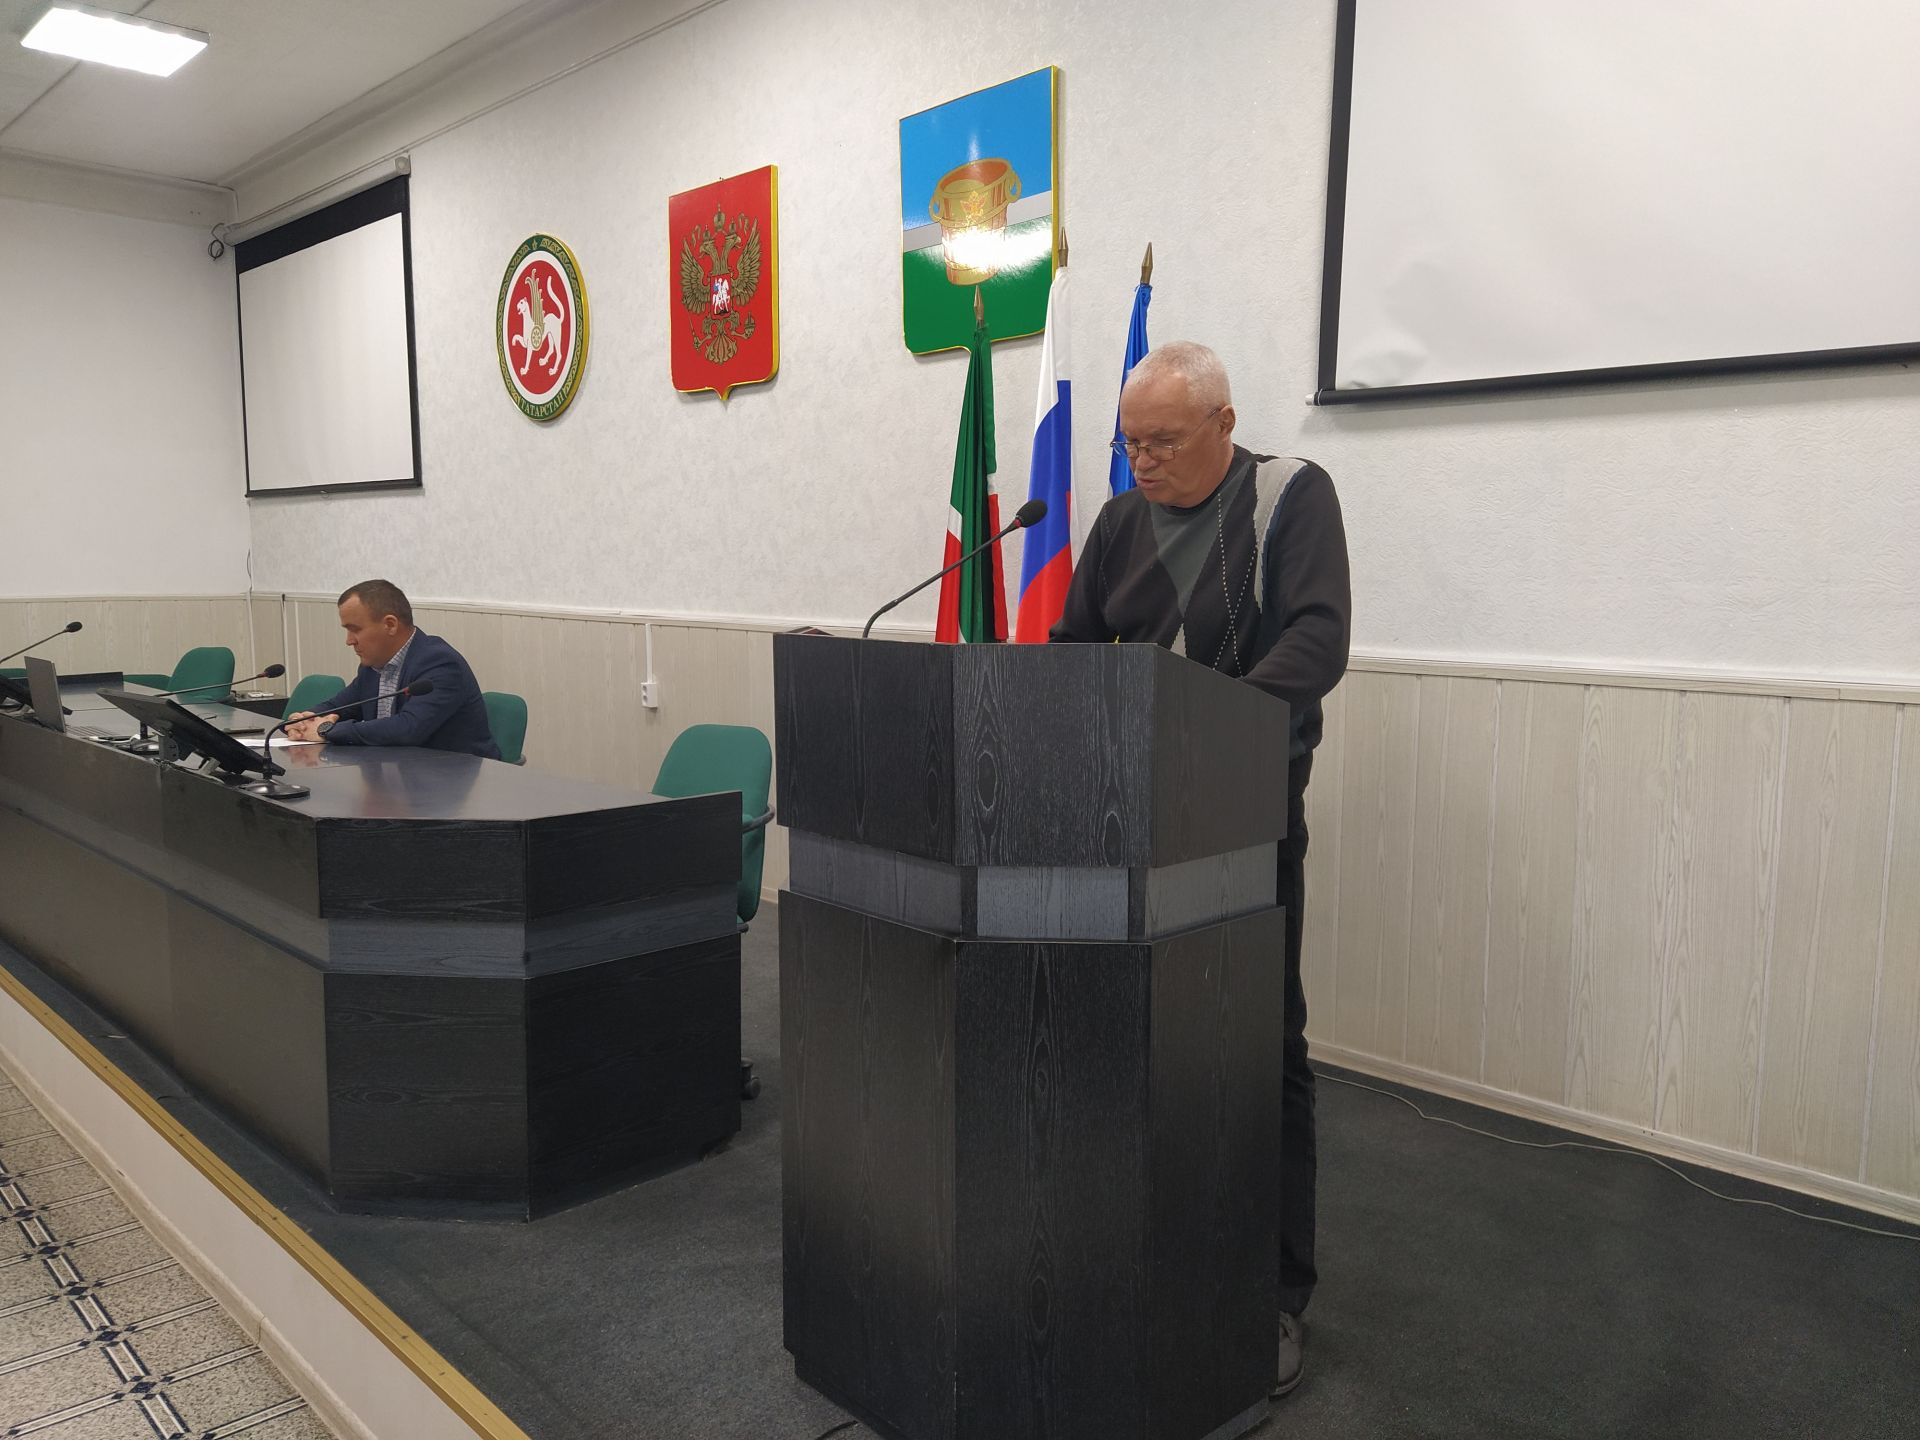 В чистопольском муниципалитете обсуждали мероприятия по повышению готовности гражданской обороны